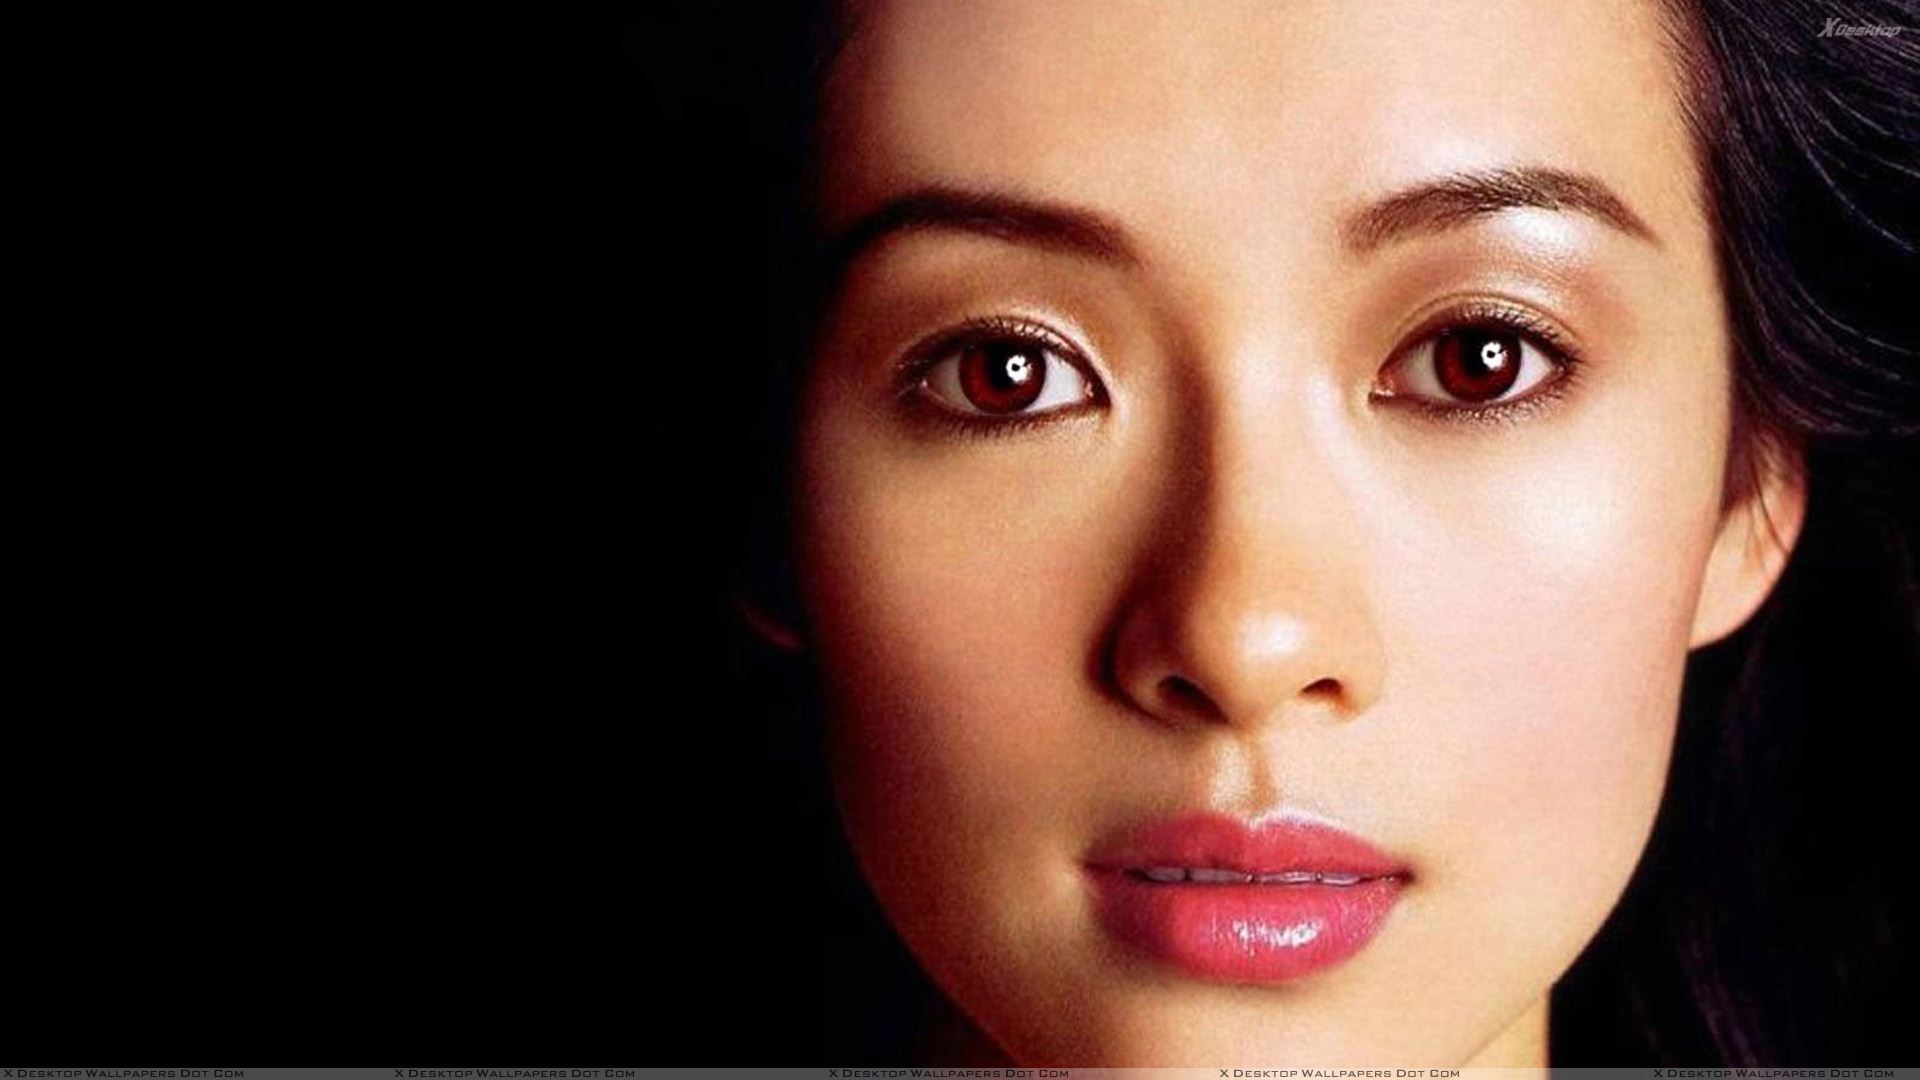 Zhang Ziyi Smiling In White Top Cute Photoshoot Wallpaper